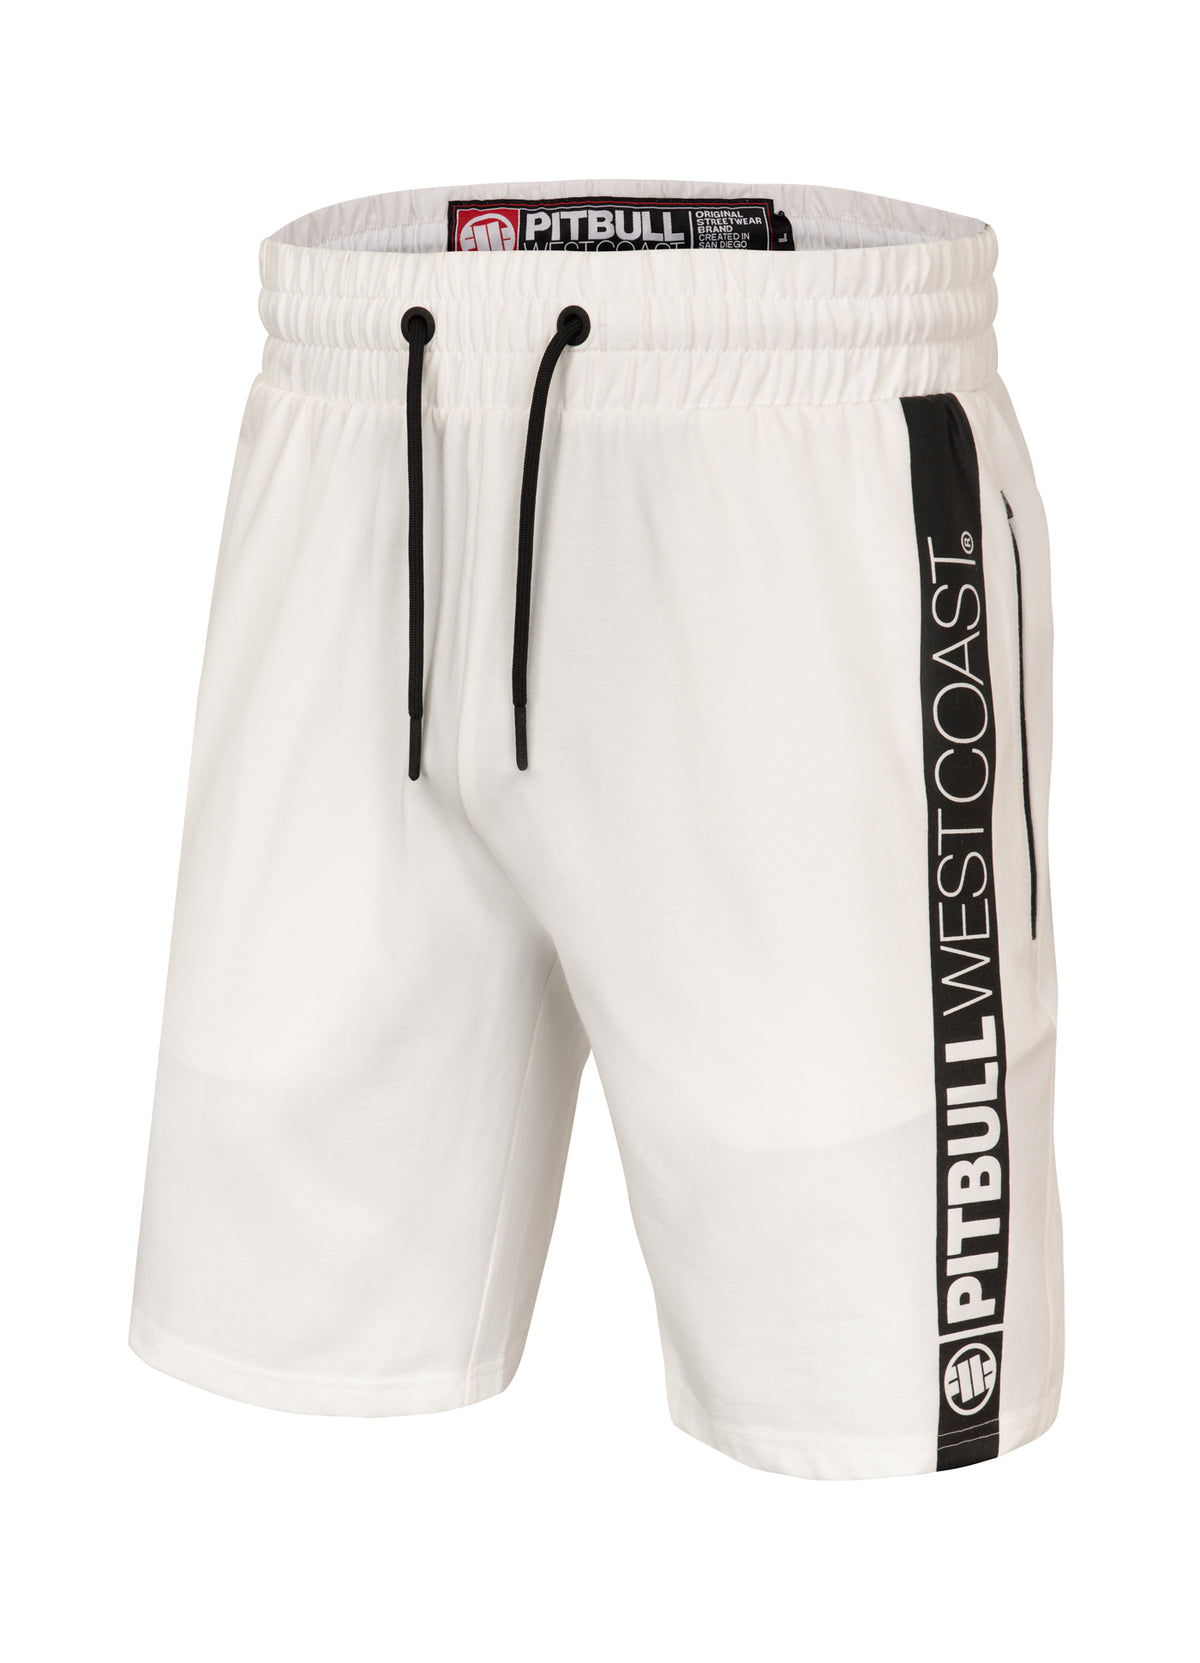 TARENTO 210 Off White Shorts - Pitbullstore.eu